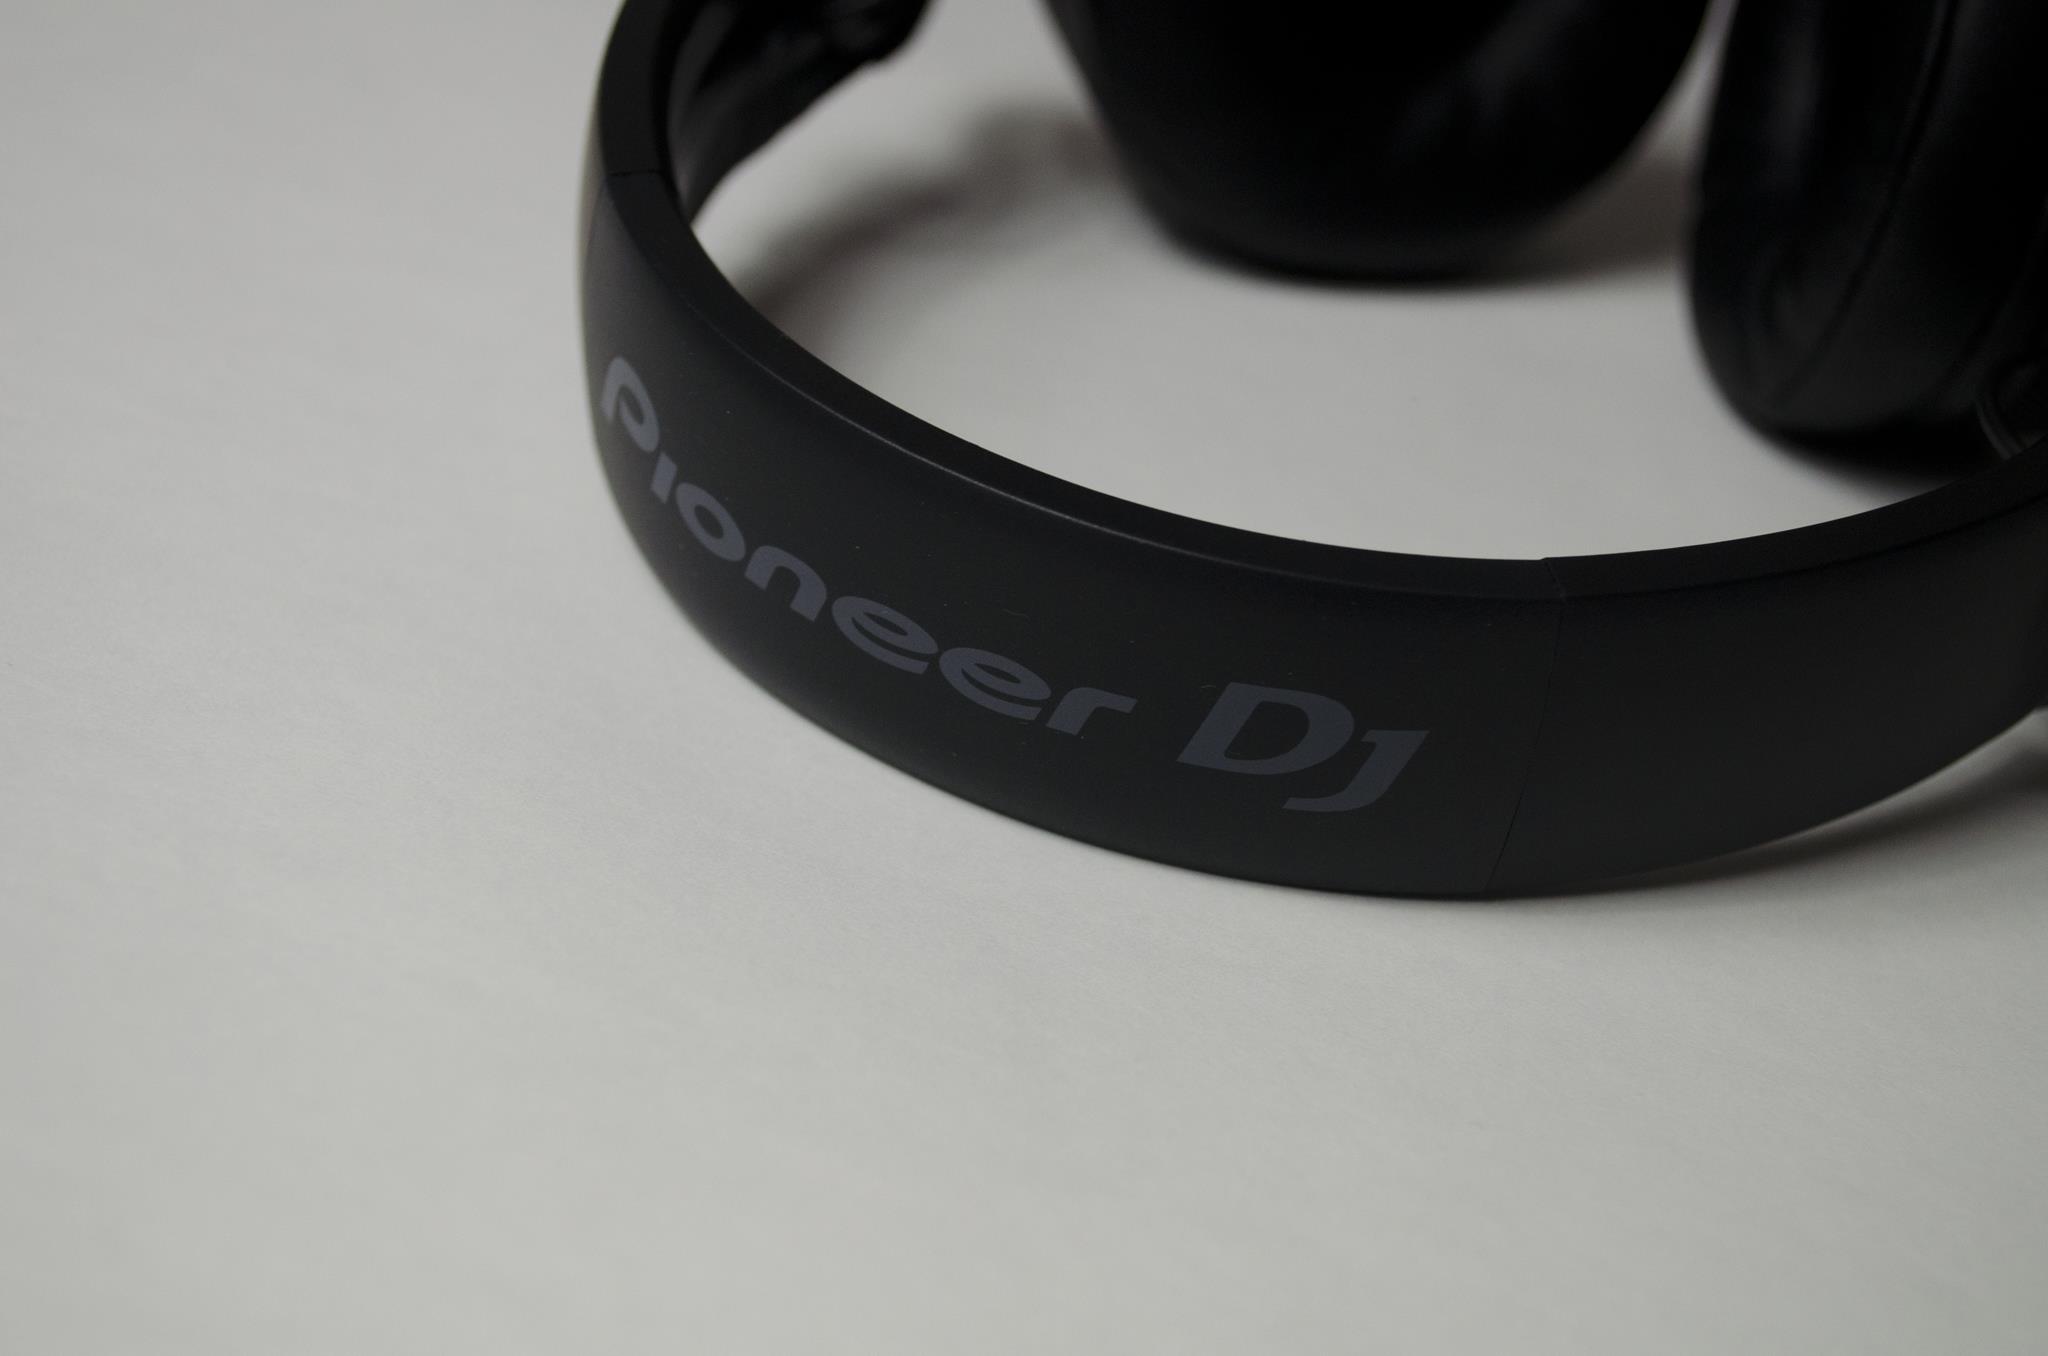 Pioneer HDJ-700 Headphones Review